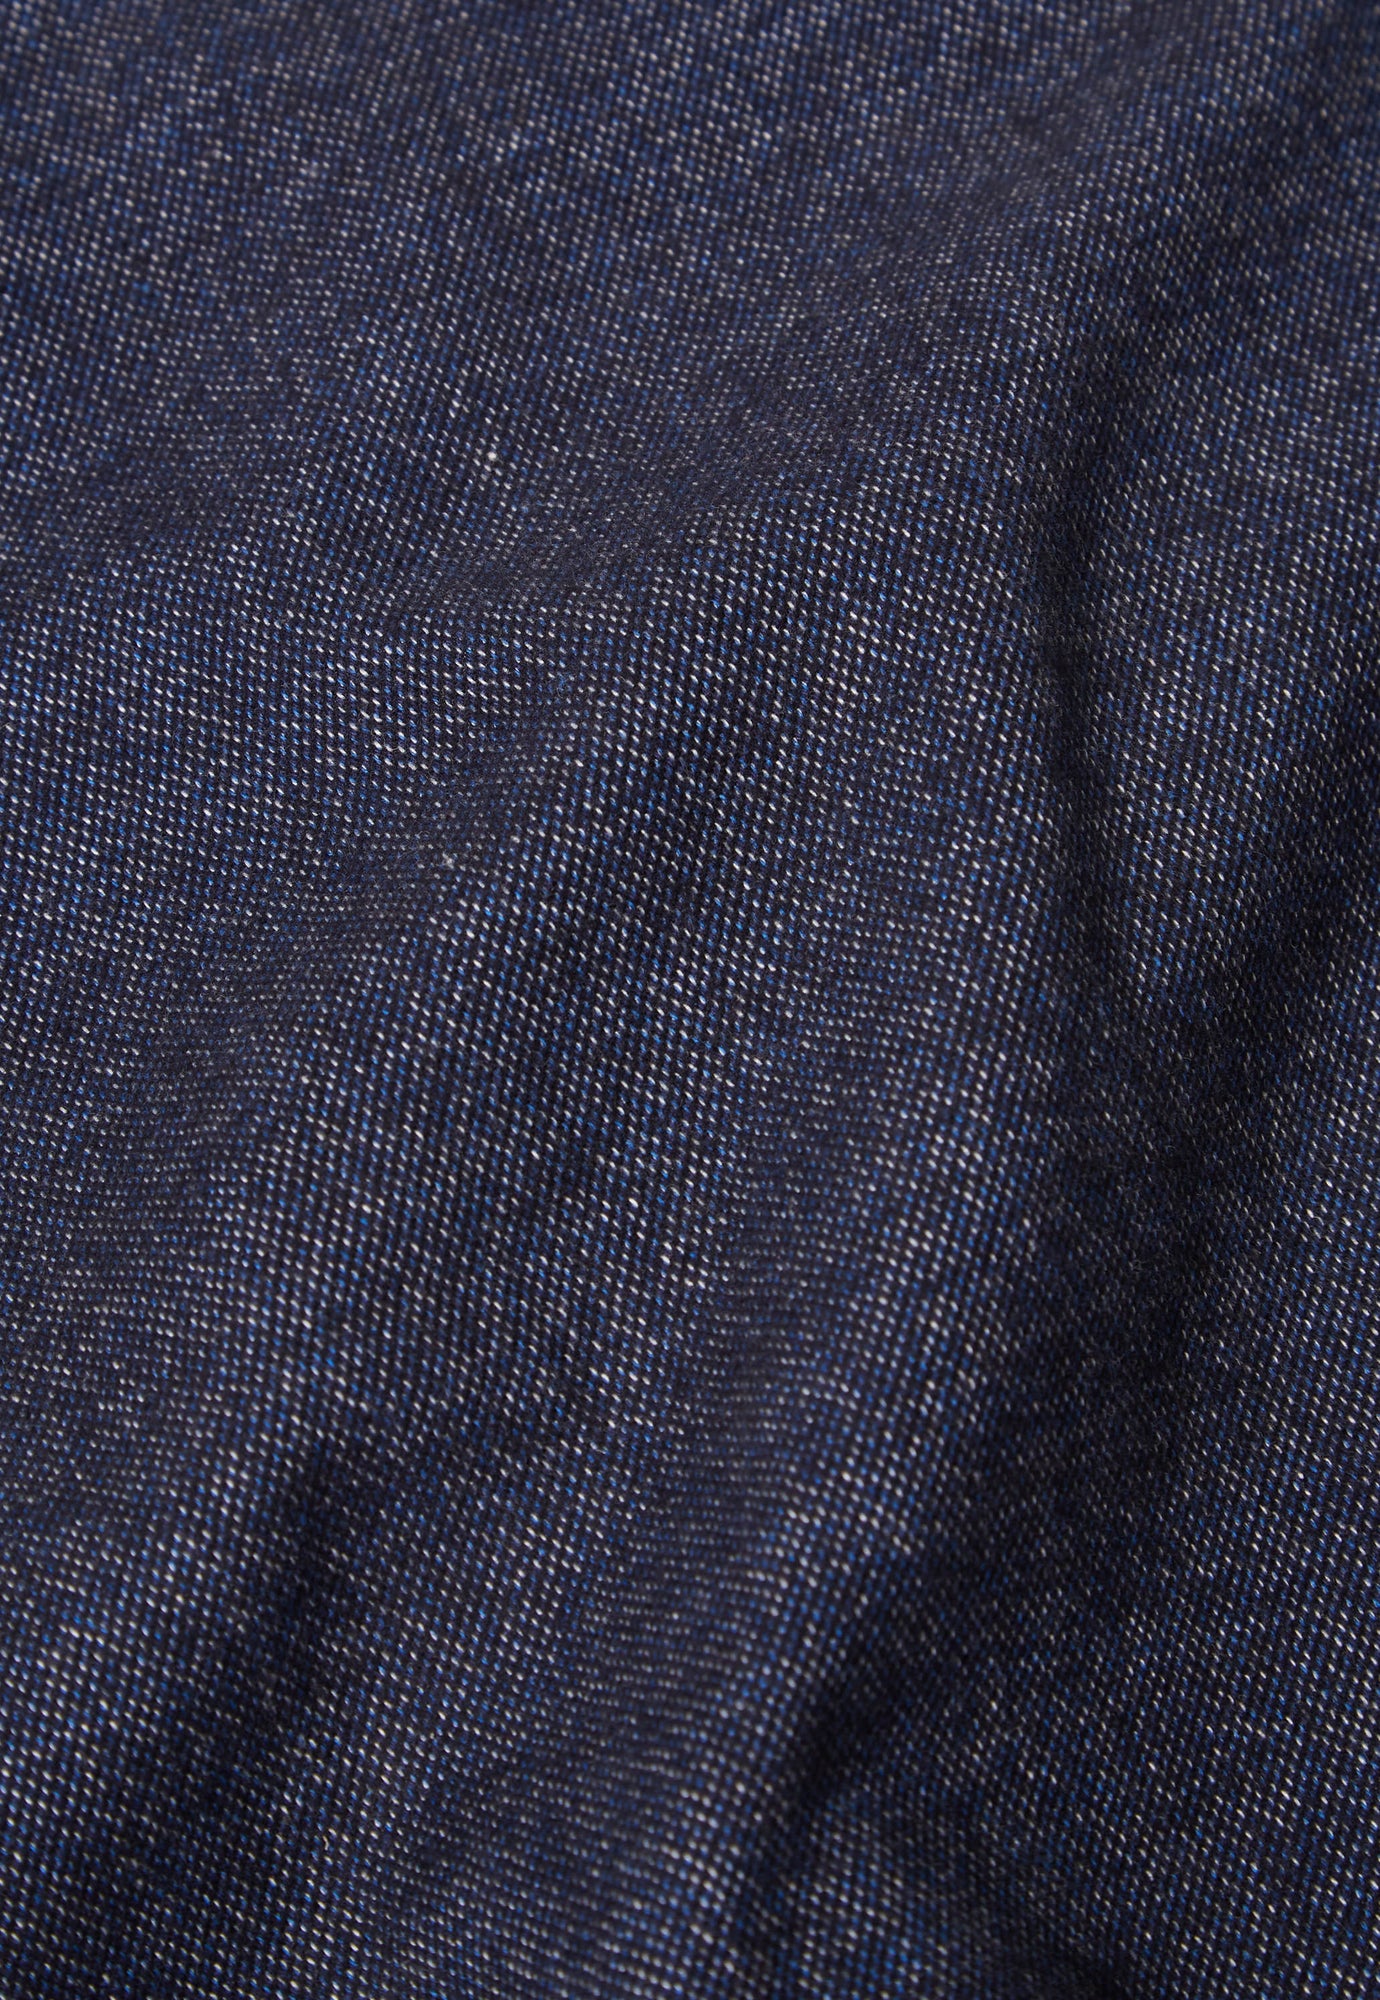 Universal Works Work Shirt in Navy Soft Flannel Cotton